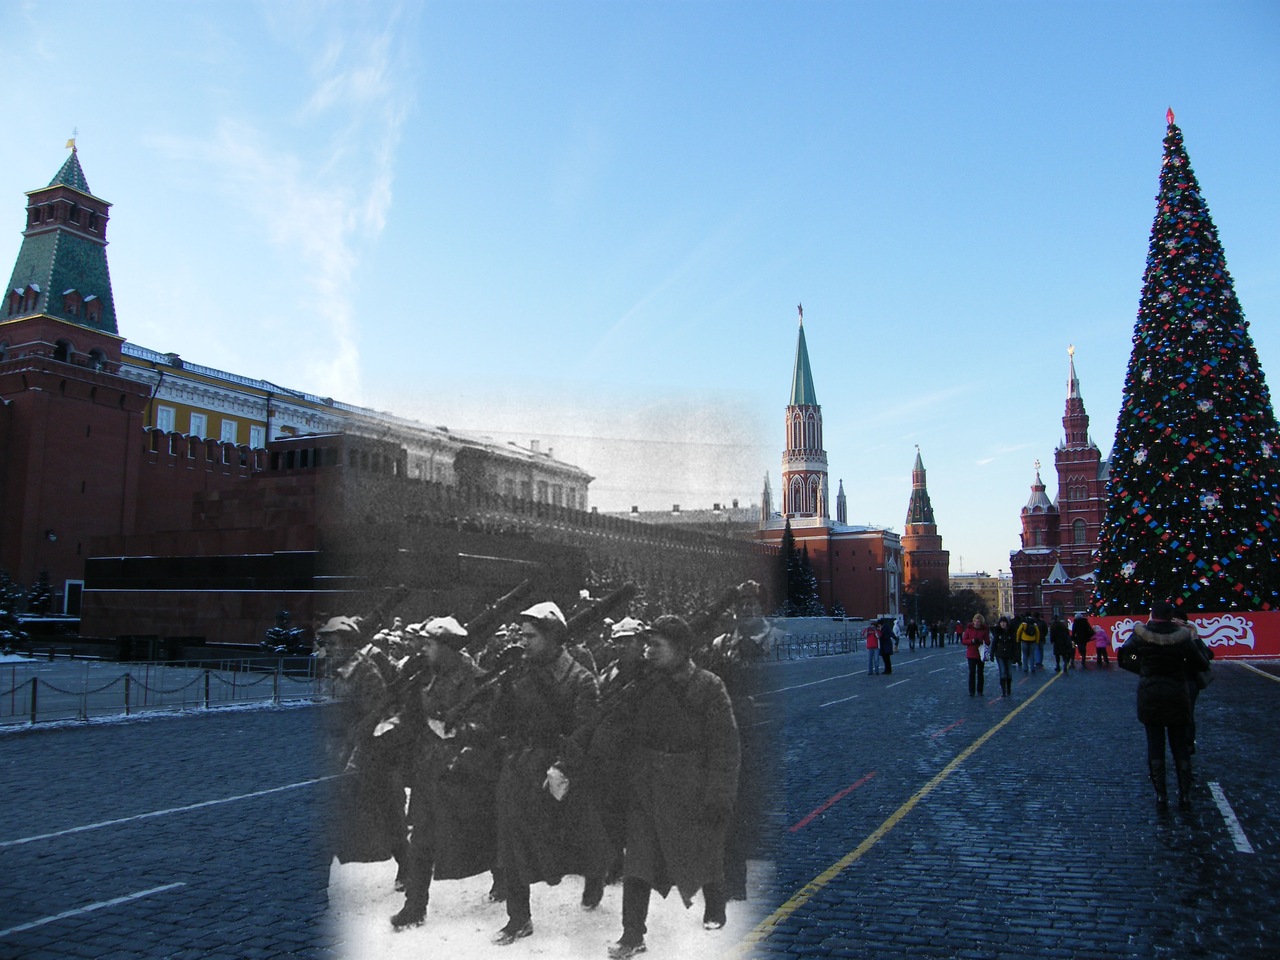 Юона парад на красной. Парад 7 ноября 1941 года в Москве на красной площади. Парад на красной площади 7 ноября 1941 года. Фото парада 7 ноября 1941 года на красной площади в Москве. Парад в ноябре 1941 года в Москве.